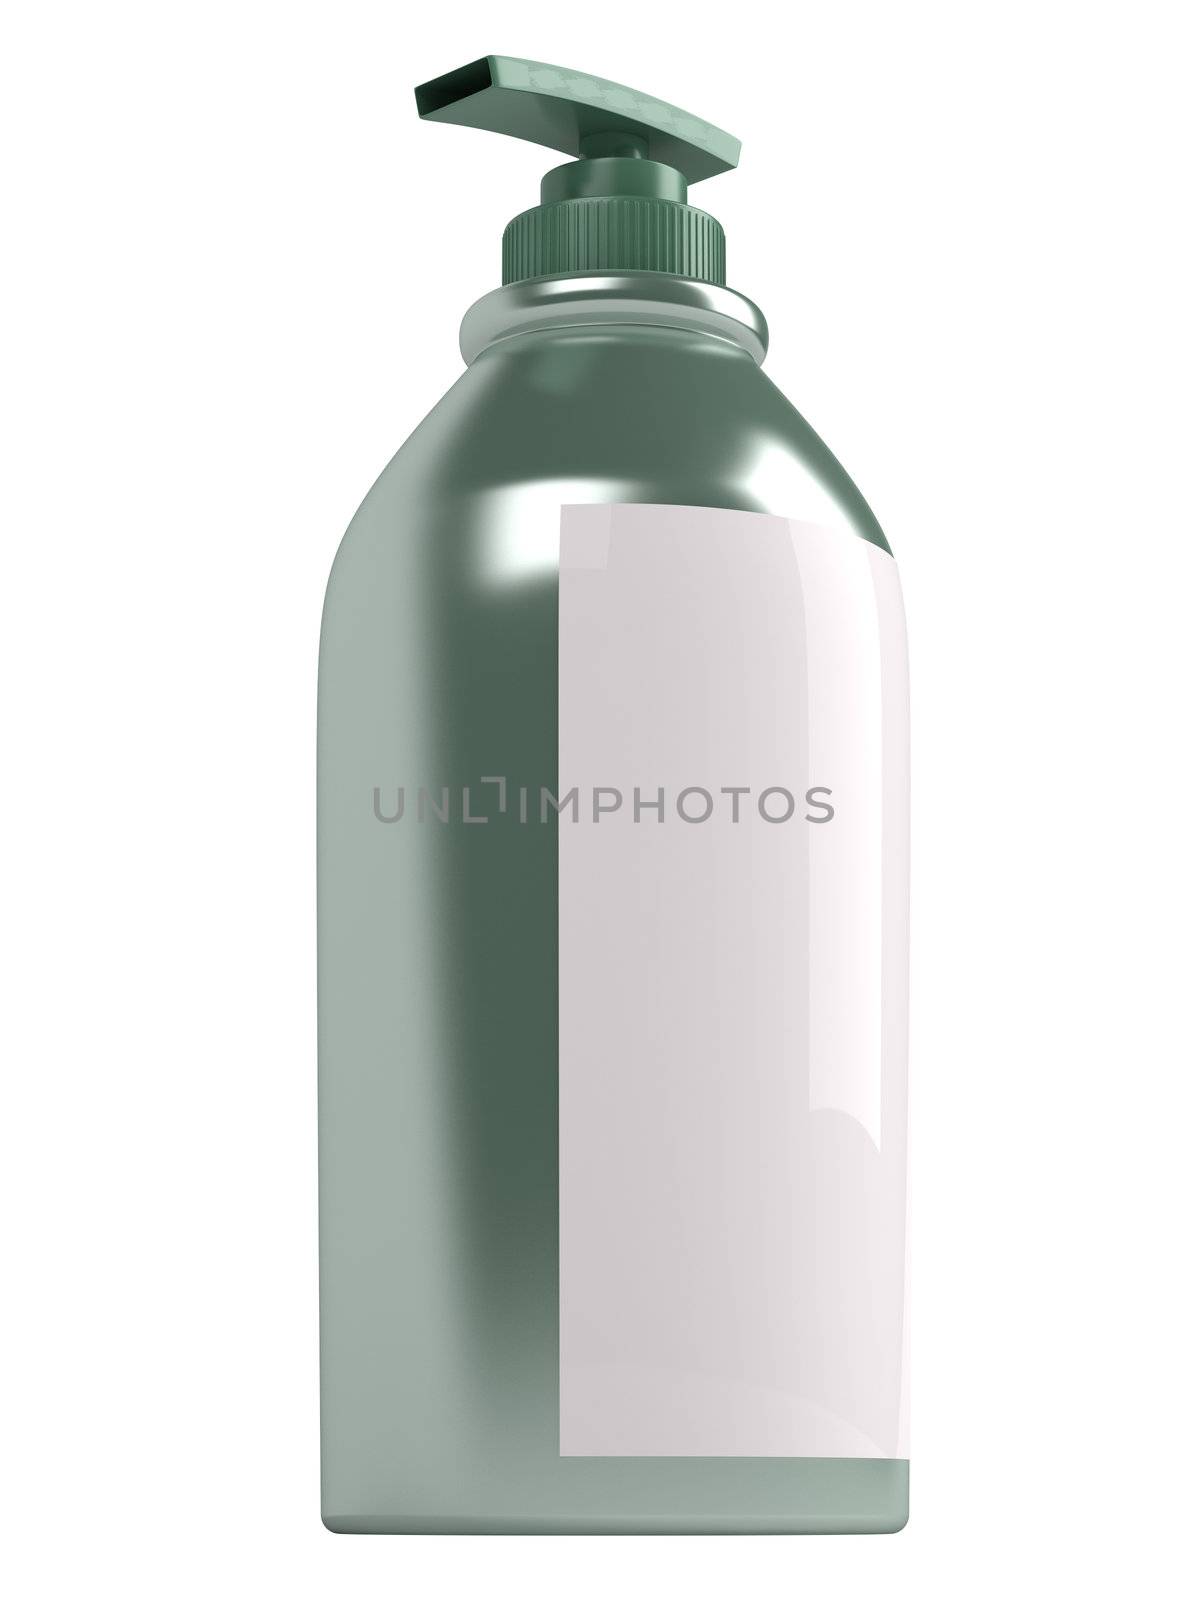 Green shampoo bottle isolated on white background